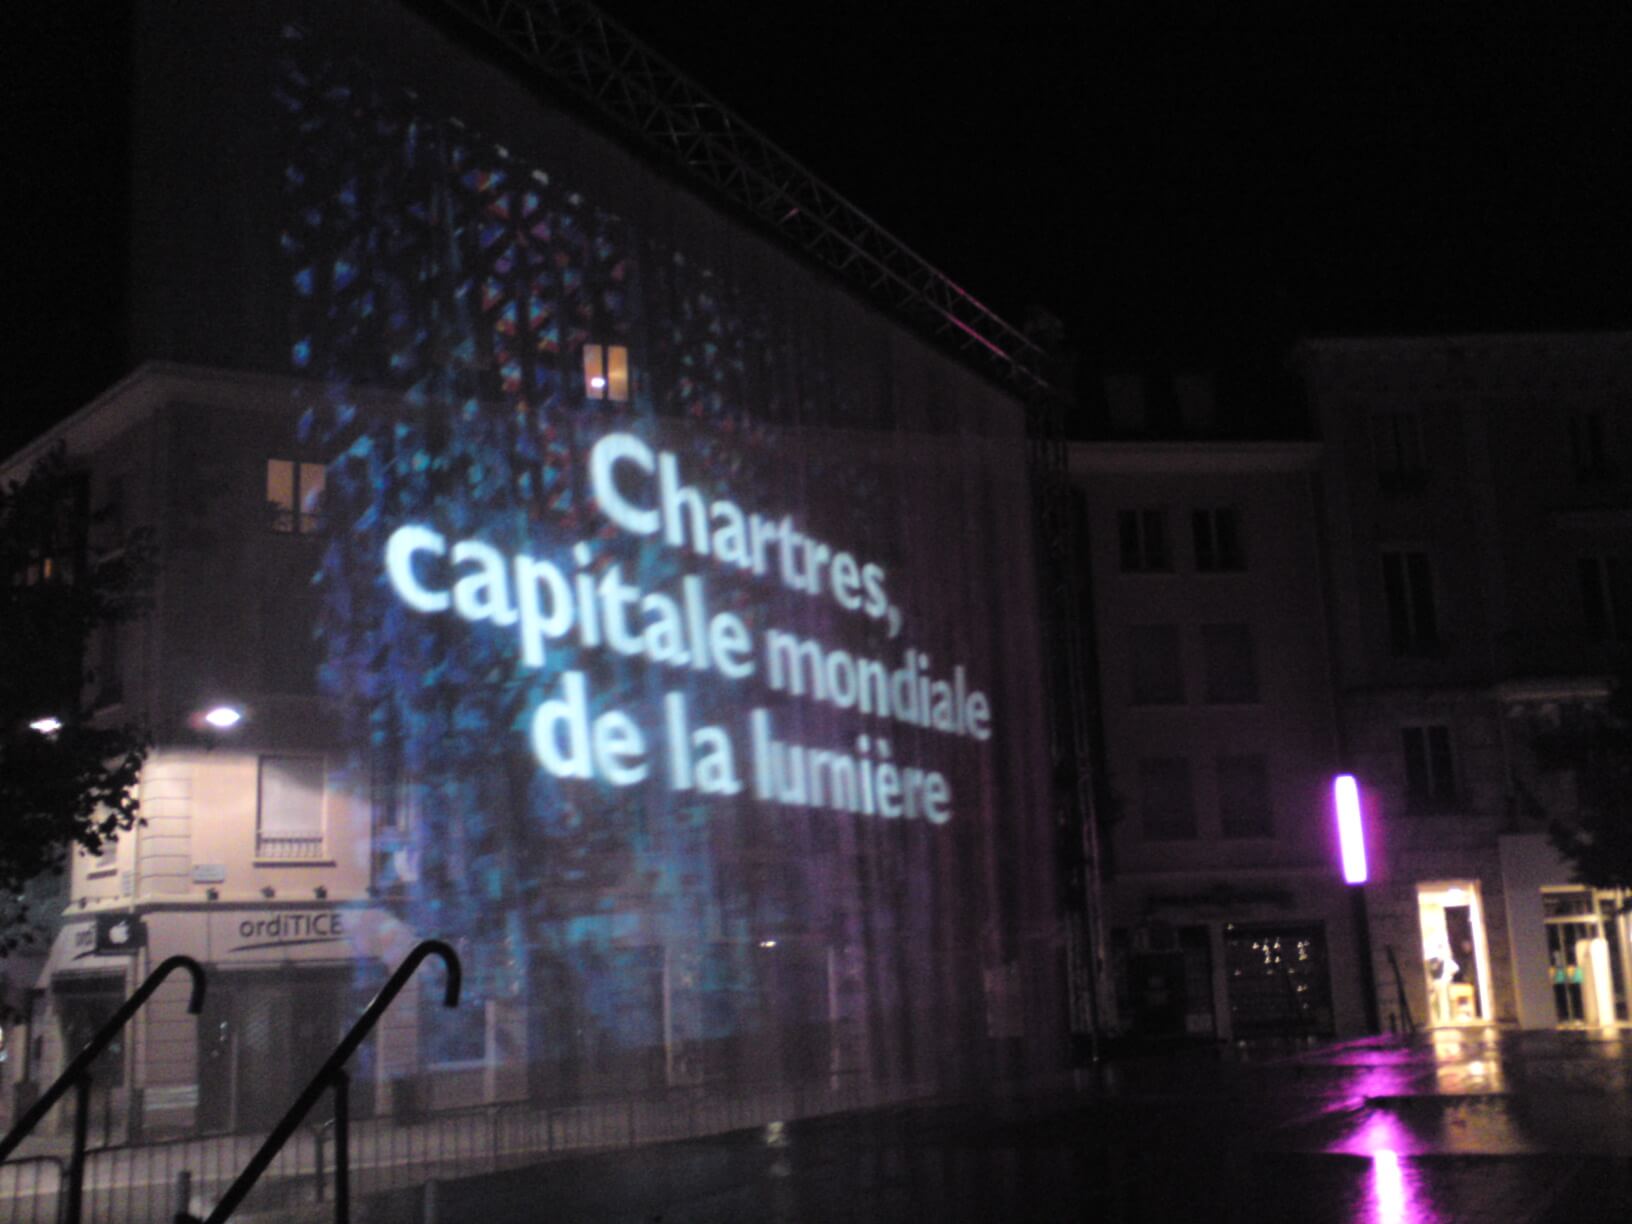 Atlantid - Chartres, capital mundial de la luz